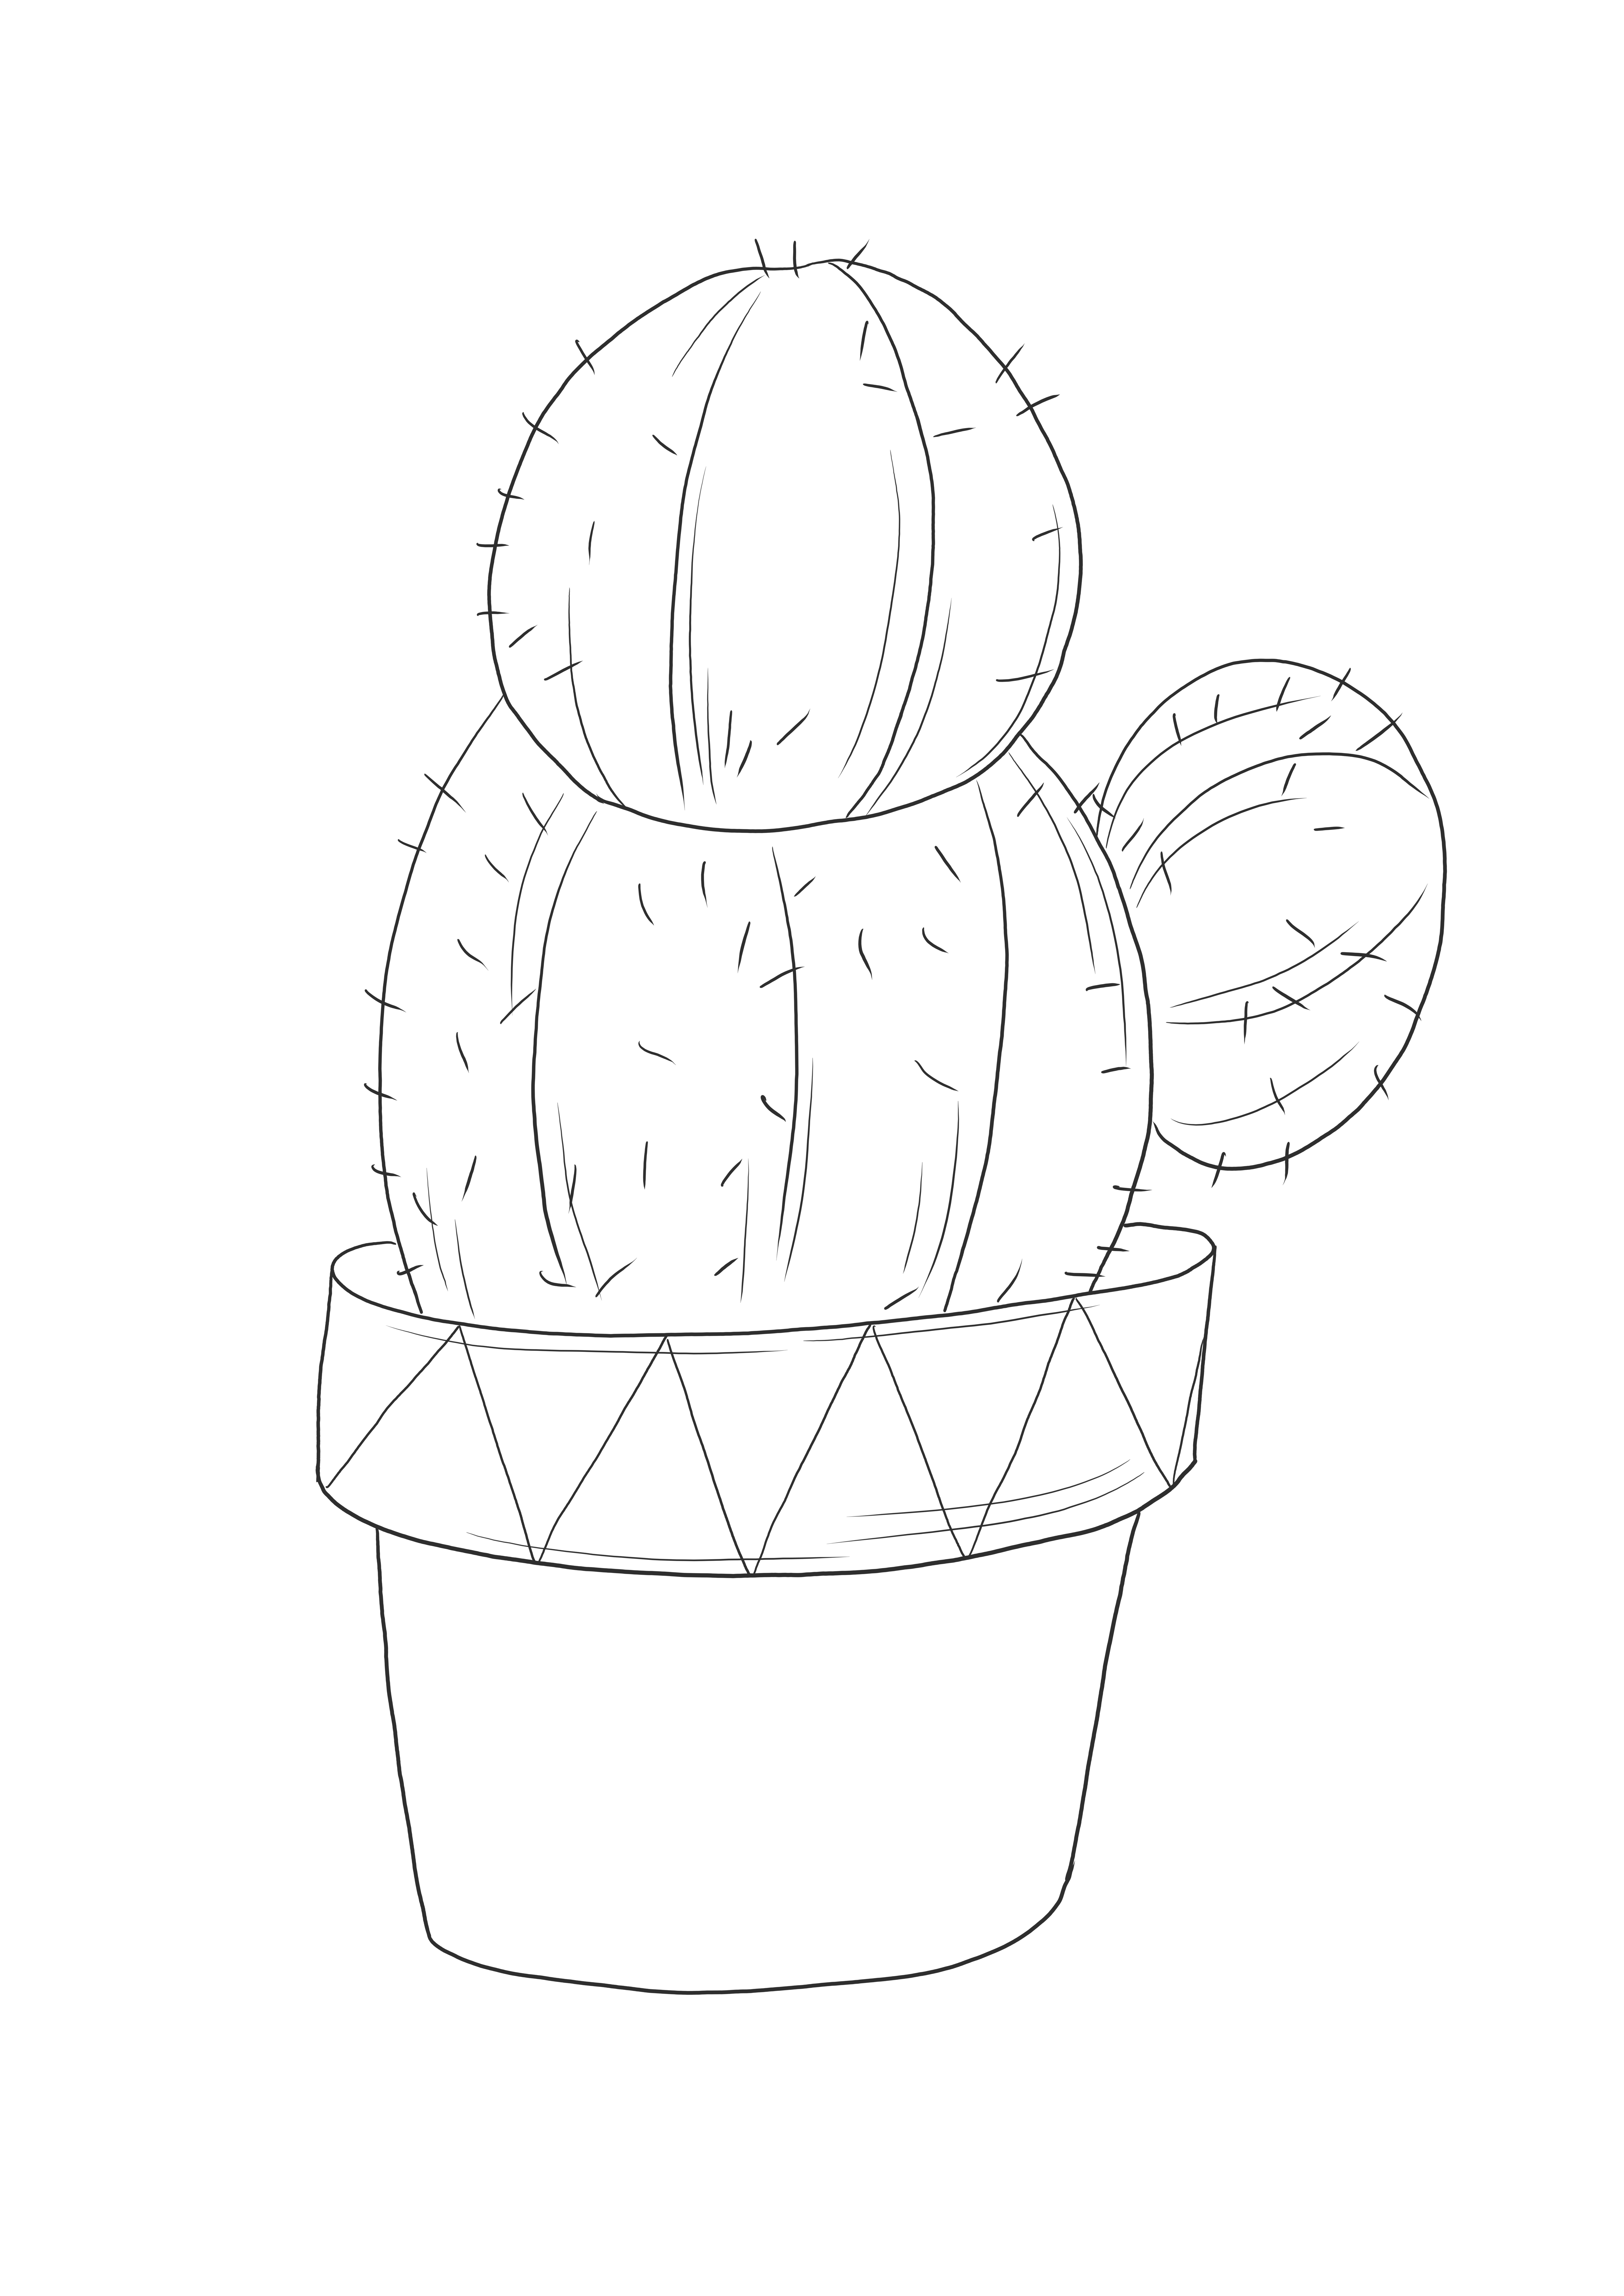 Una hoja para colorear simple de un cactus en una maceta gratis para imprimir